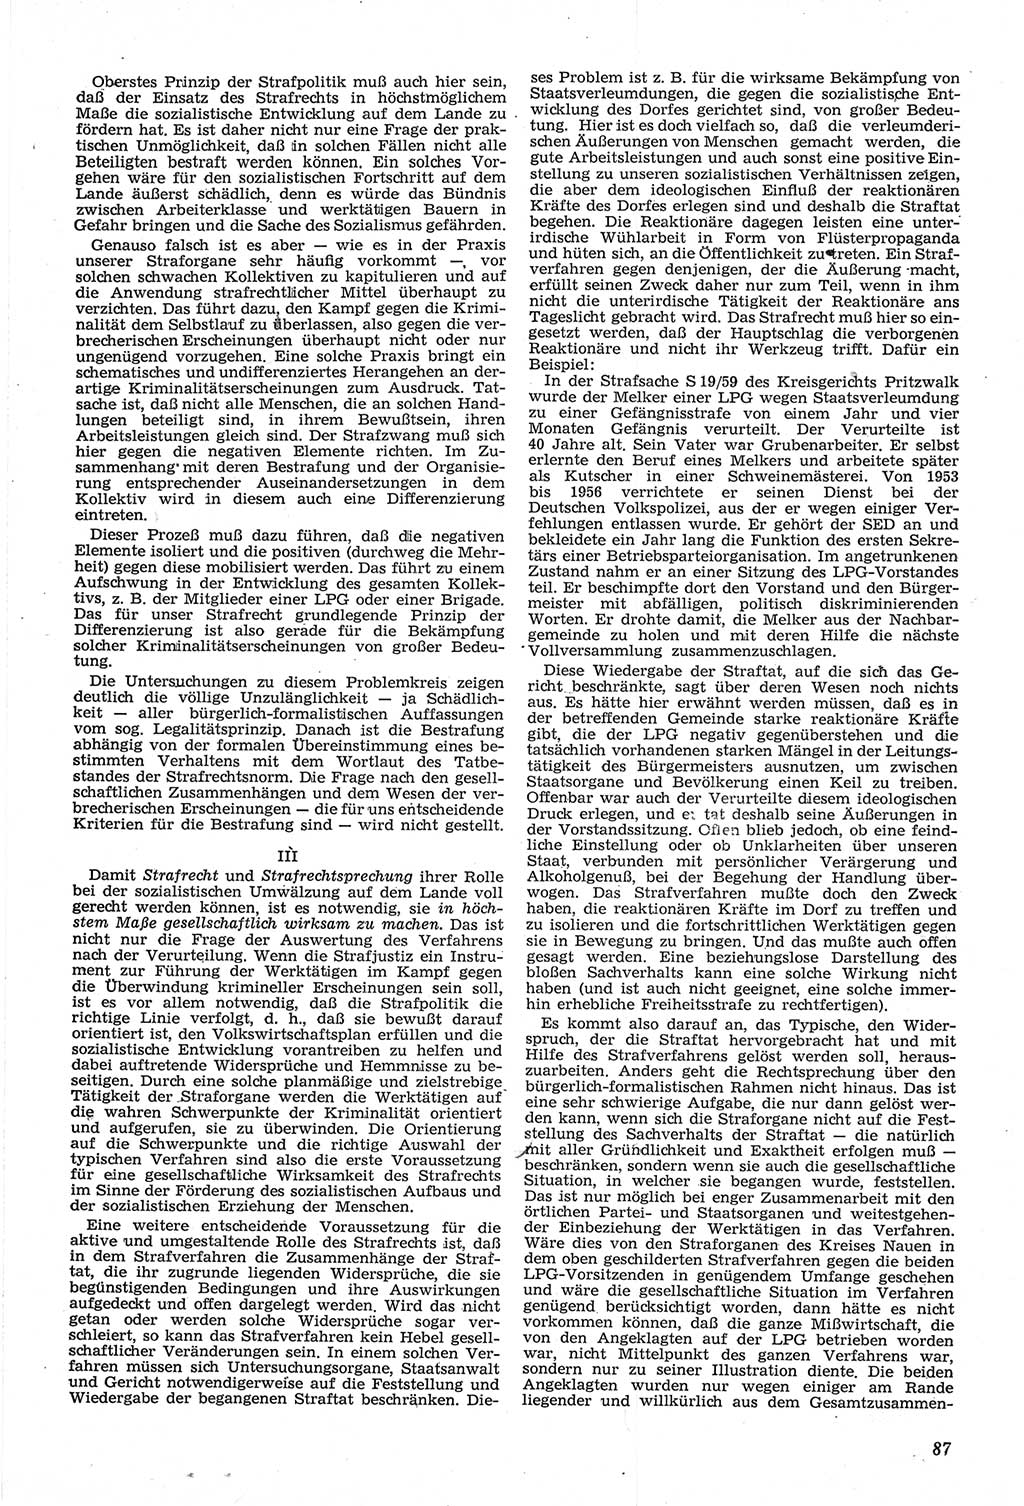 Neue Justiz (NJ), Zeitschrift für Recht und Rechtswissenschaft [Deutsche Demokratische Republik (DDR)], 14. Jahrgang 1960, Seite 87 (NJ DDR 1960, S. 87)